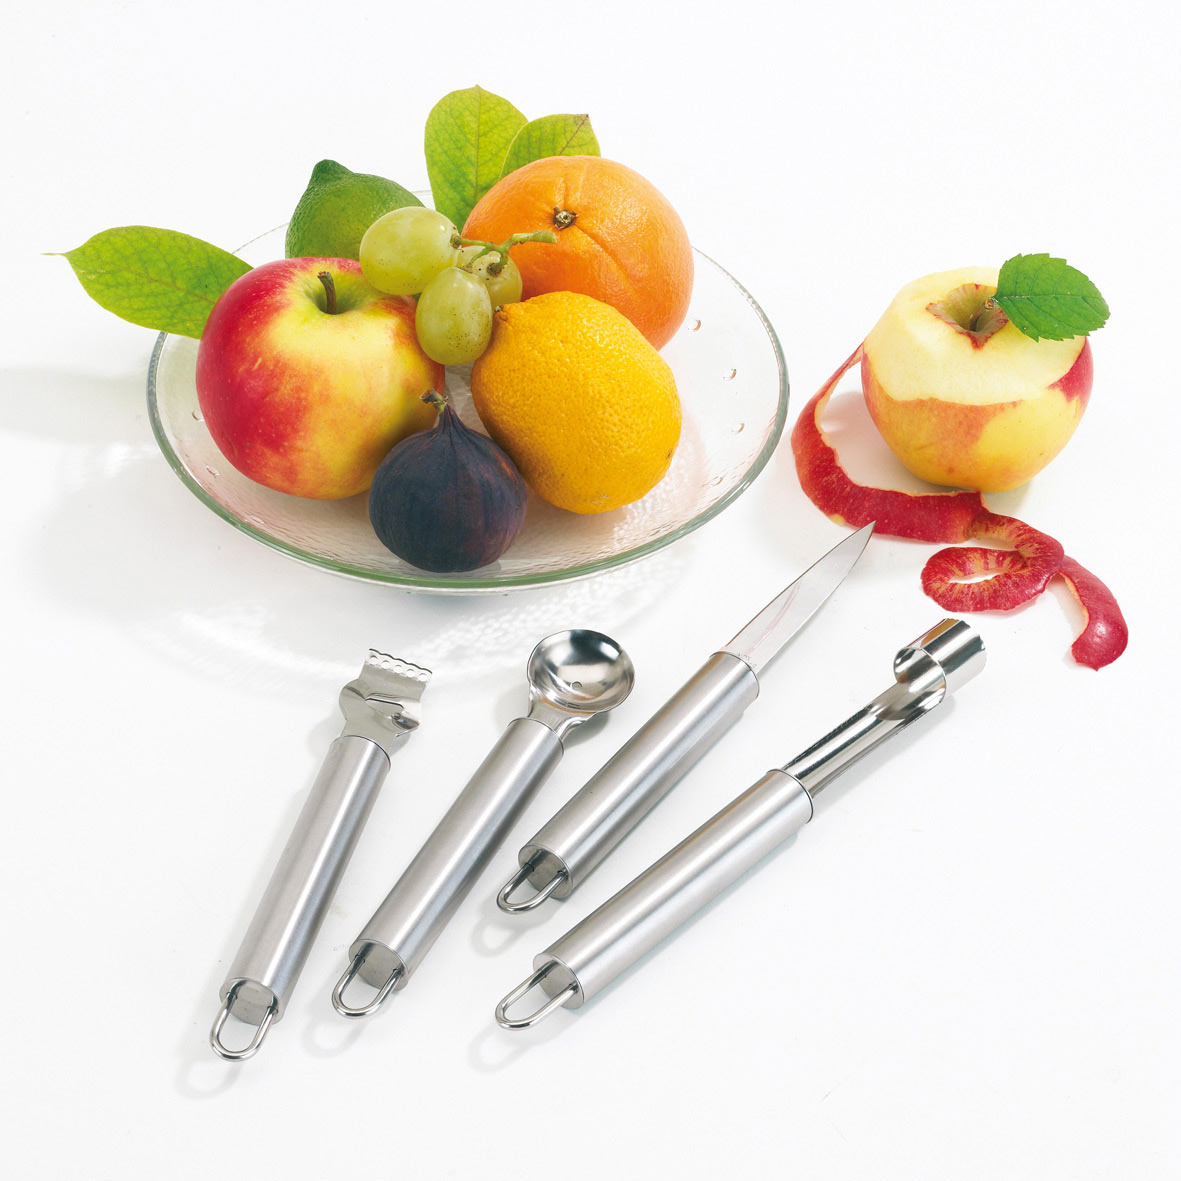 Set Couverts A Fruit Publicitaire - Les Couteaux De Cuisine